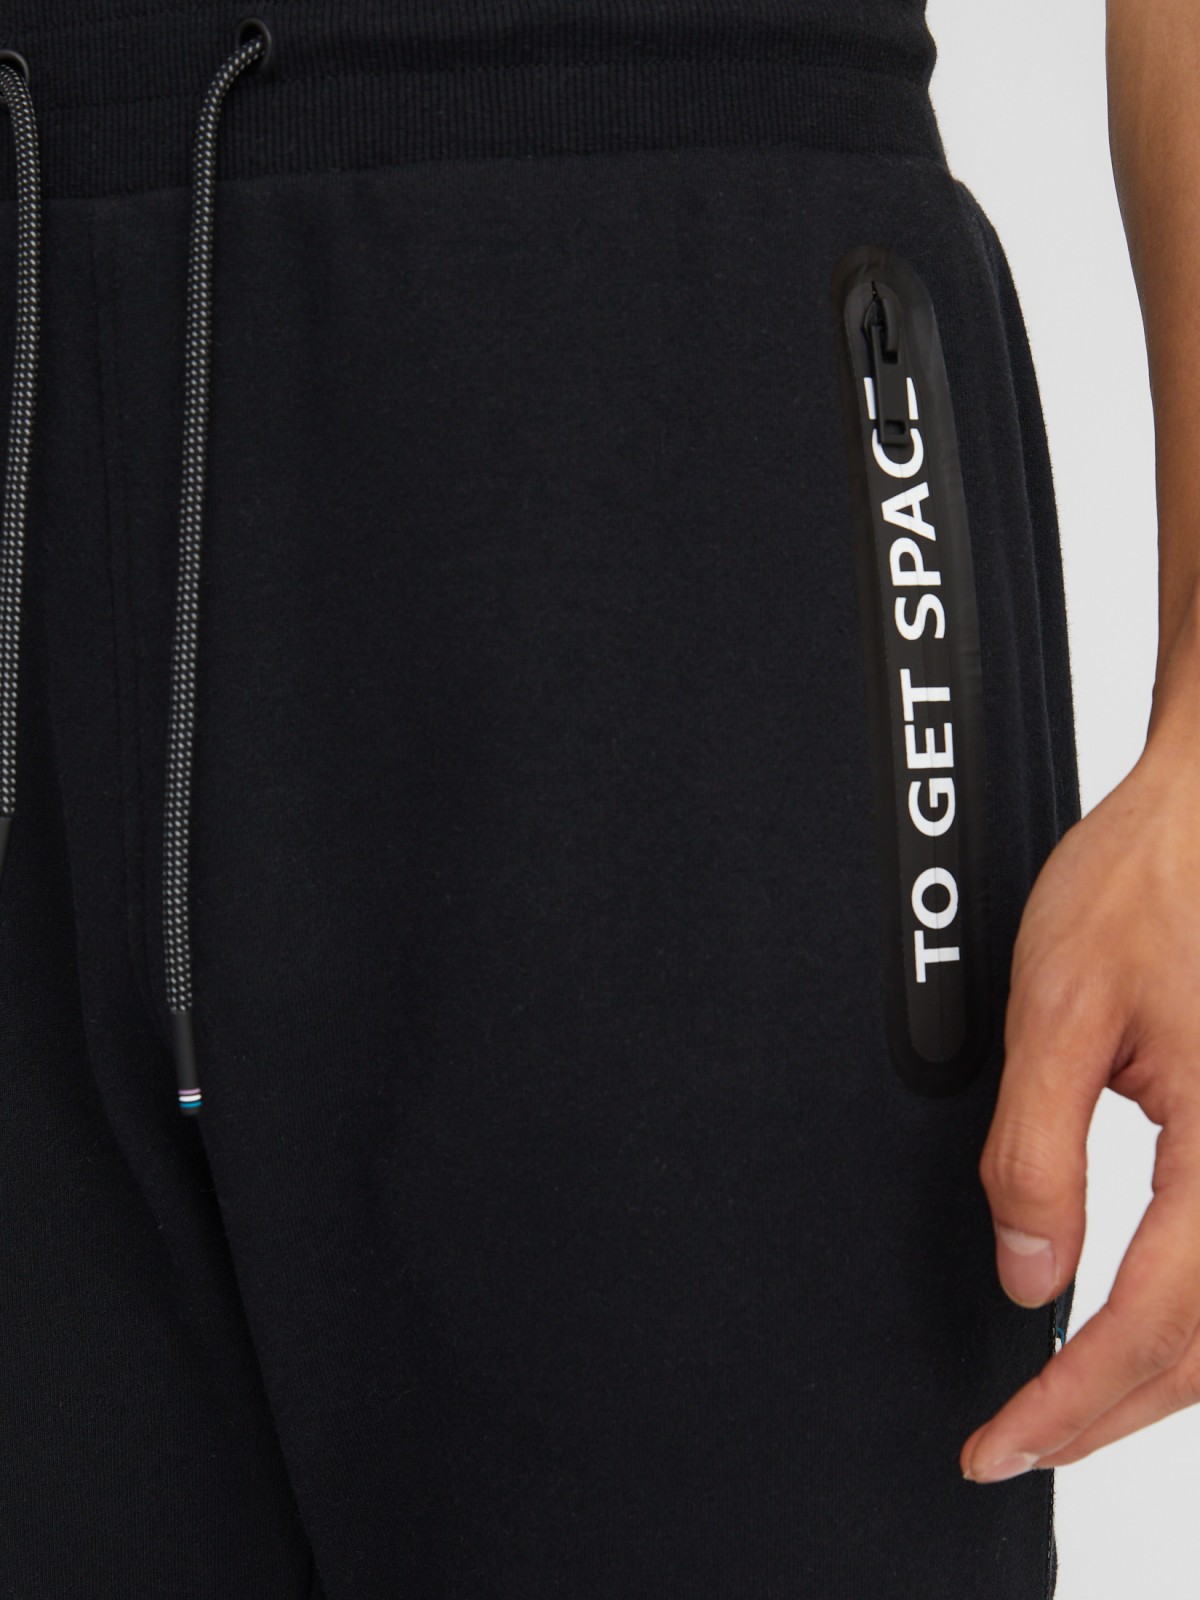 Утеплённые трикотажные брюки-джоггеры в спортивном стиле с принтом zolla 213337679051, цвет черный, размер S - фото 3